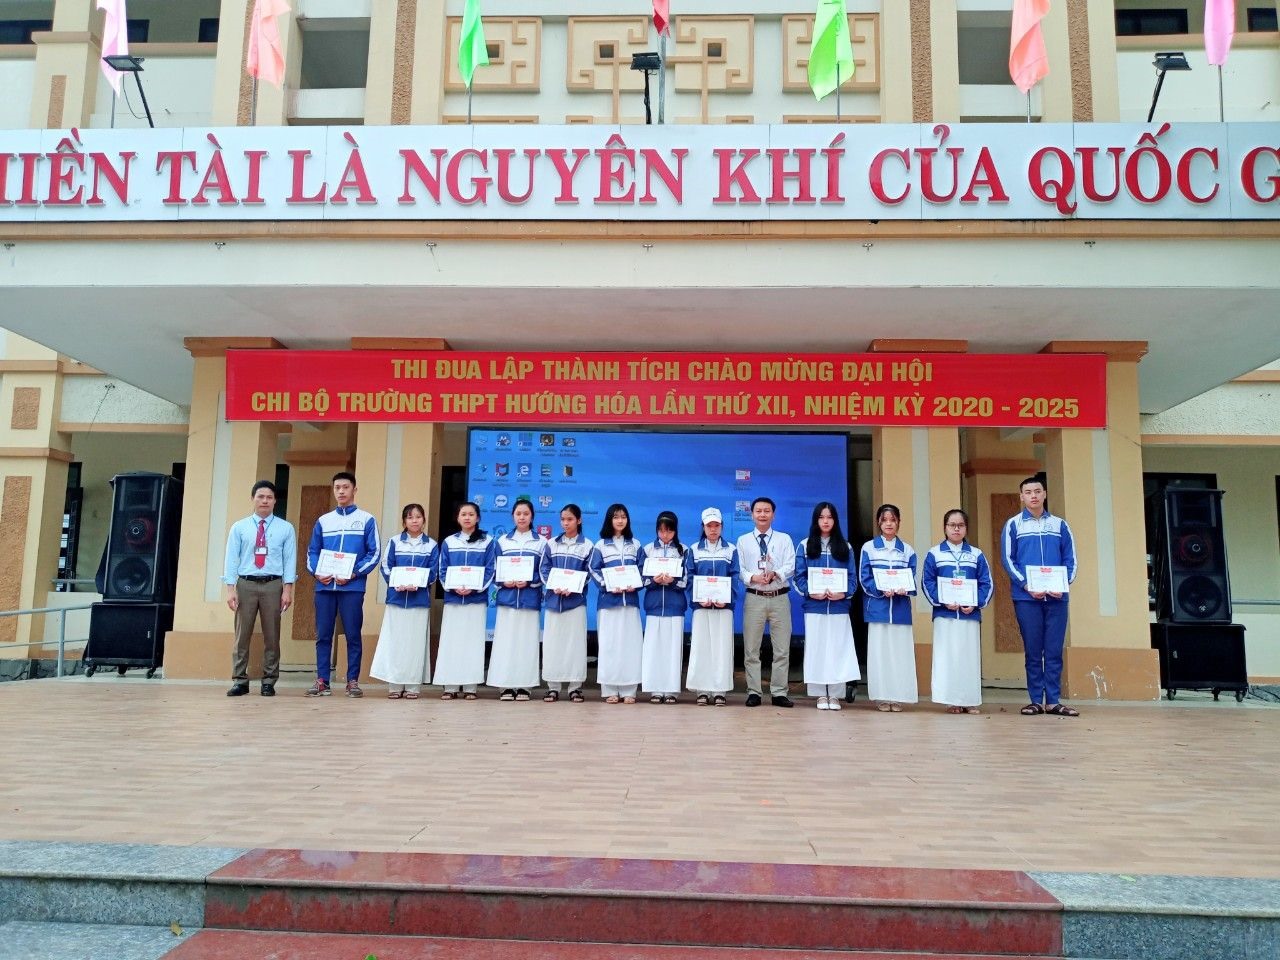 Thầy giáo Nguyễn Thành Biên và Nguyễn Chế Linh - phó hiệu trưởng nhà trường trao giải cho các học sinh đạt giải trong cuộc thi viết về cá nhân điển hình trong học tập và làm theo lời Bác